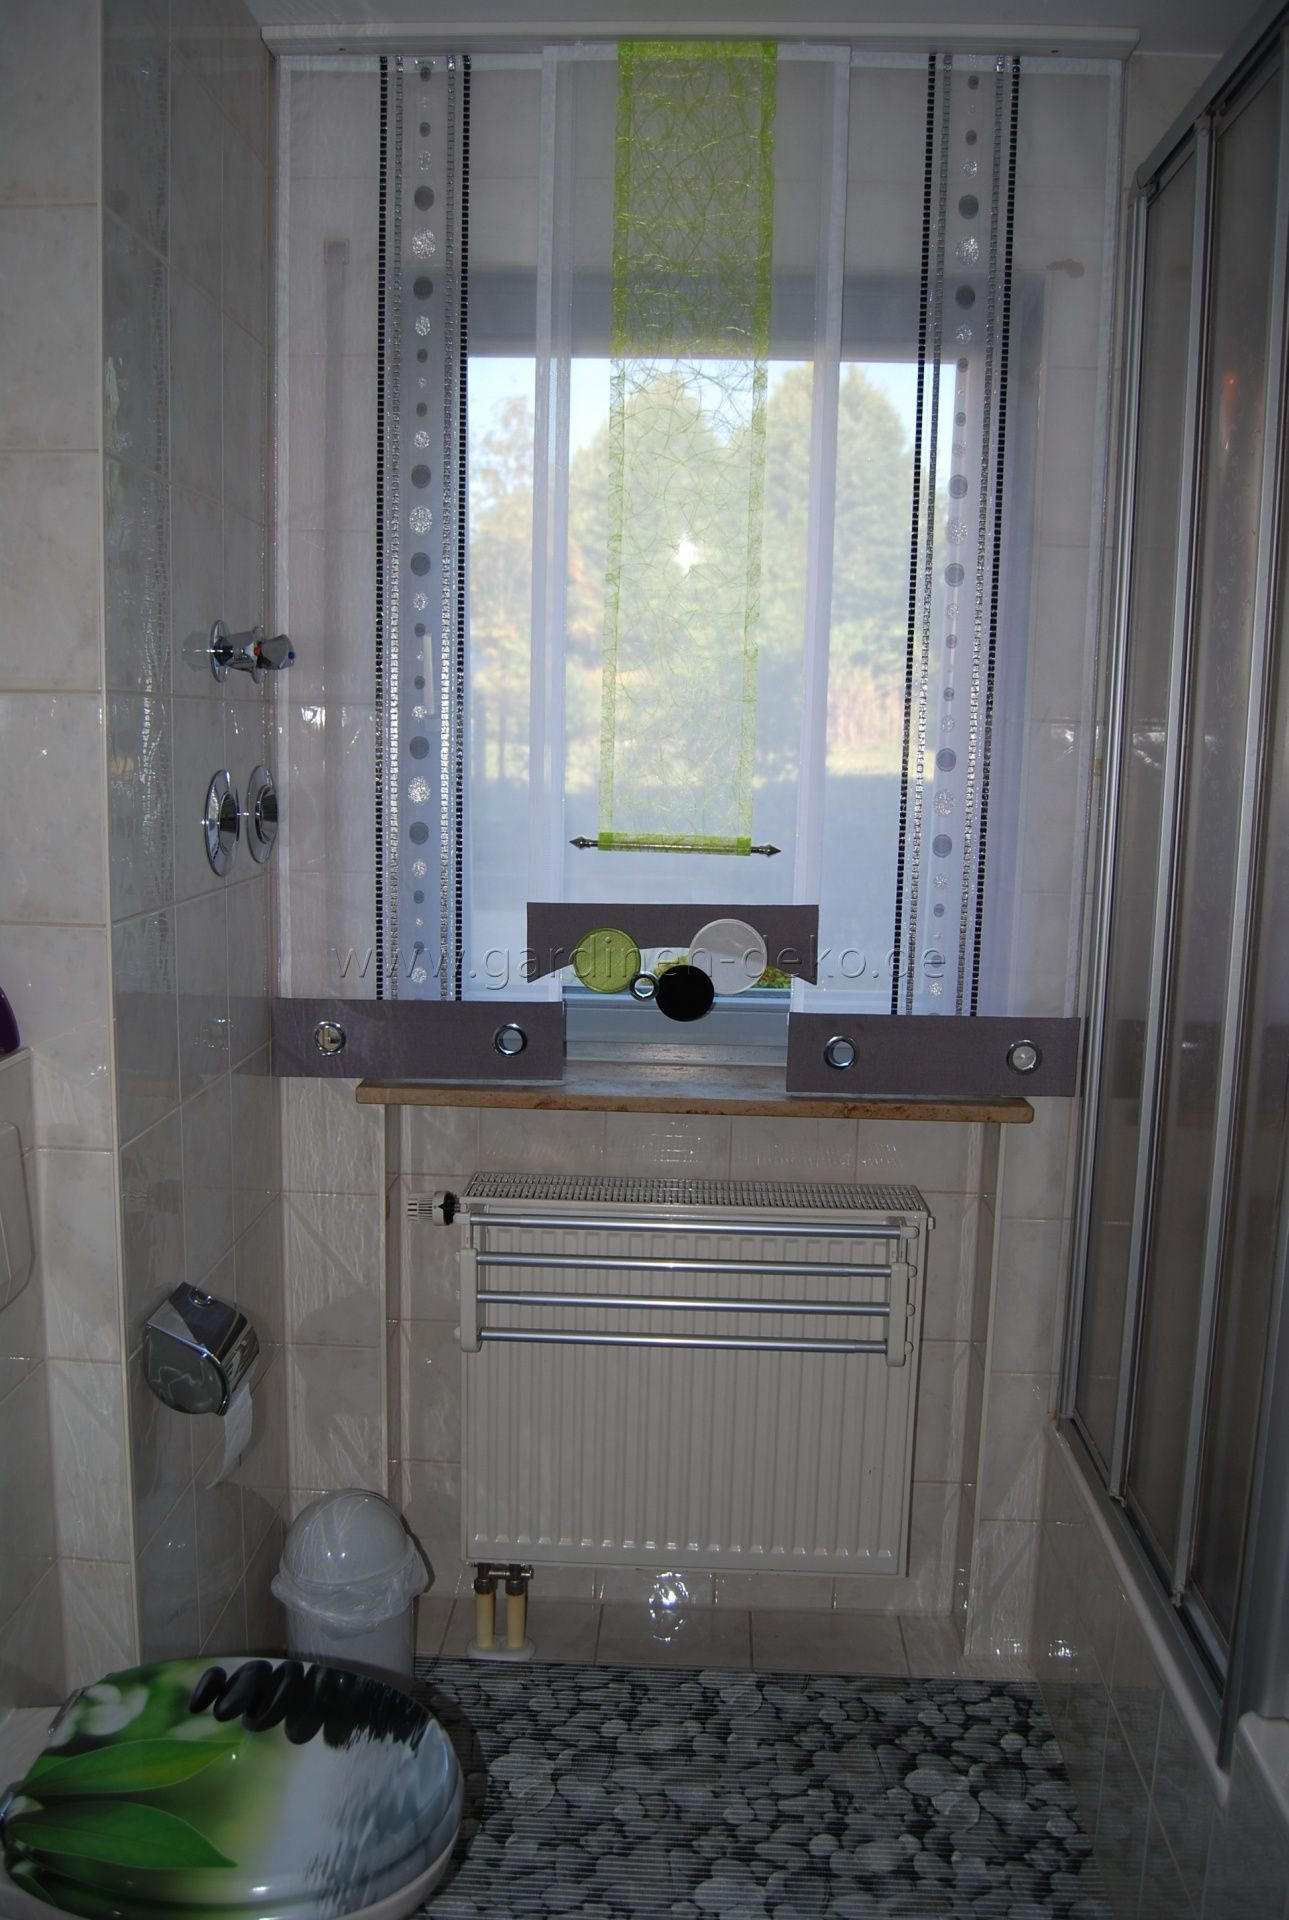 Badezimmer Gardinen
 Pin von Gretzinger Fensterdeko auf Unsere Arbeiten in 2019